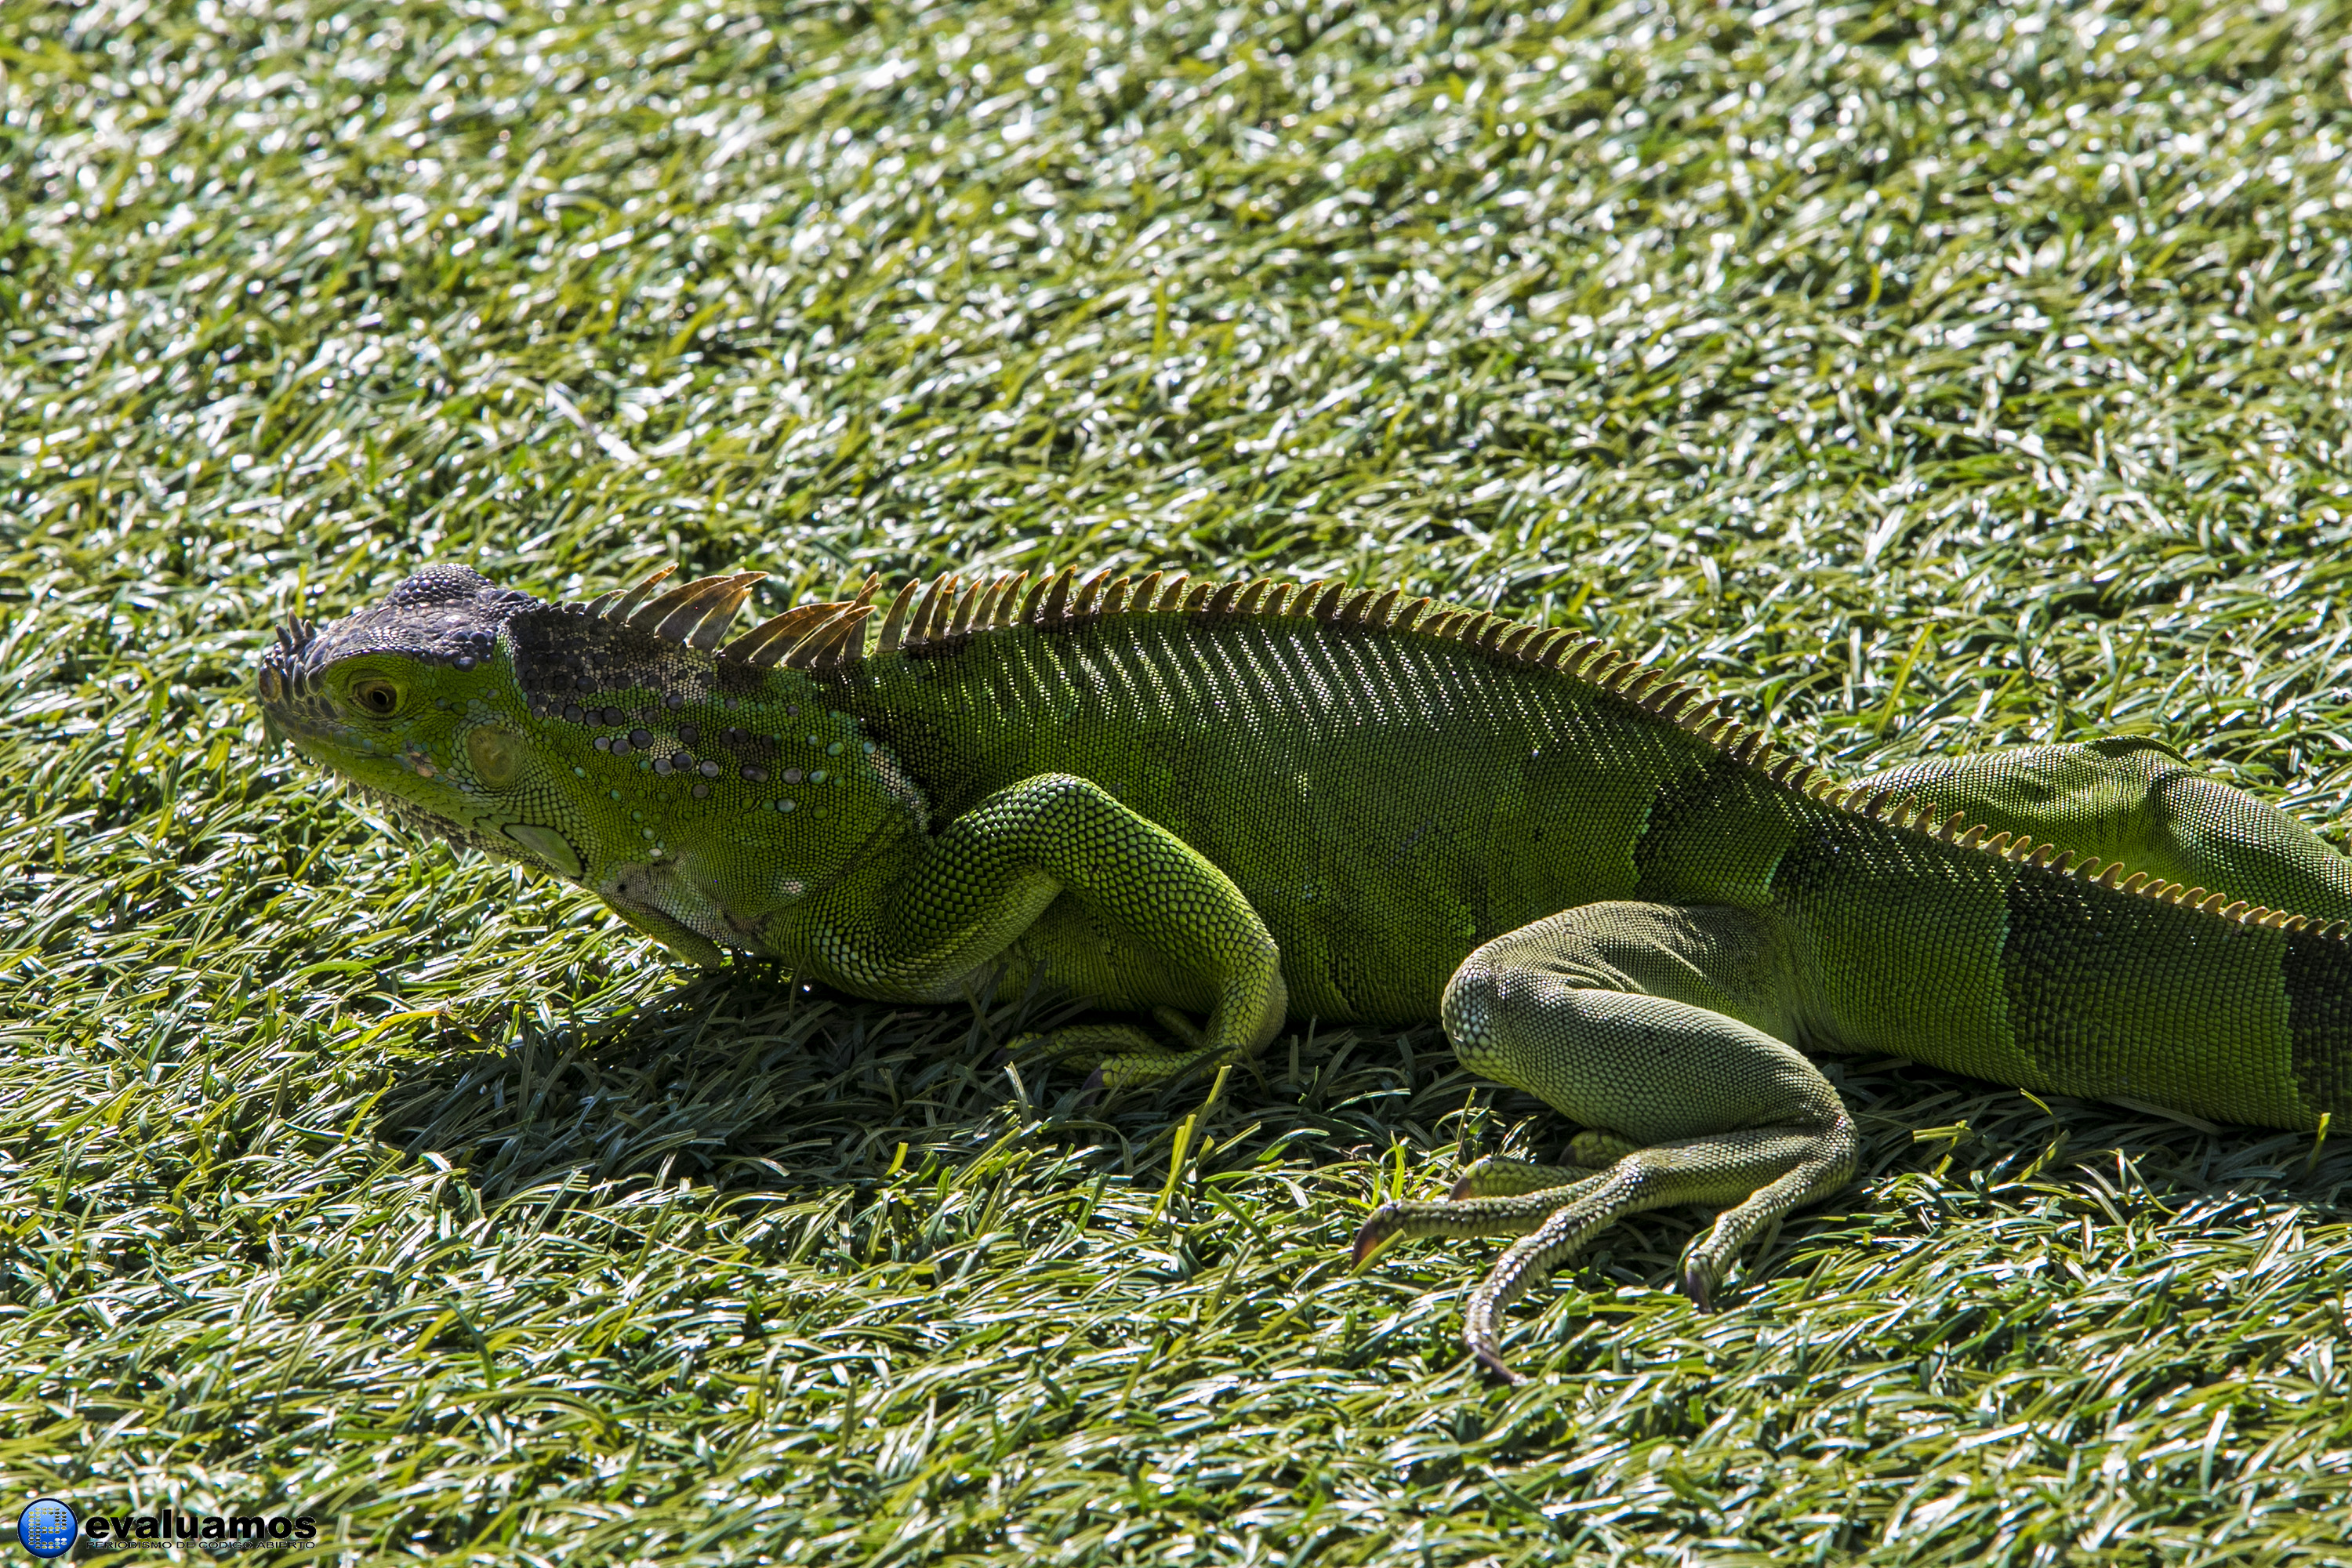 Foto de la semana: Iguana sobre verde